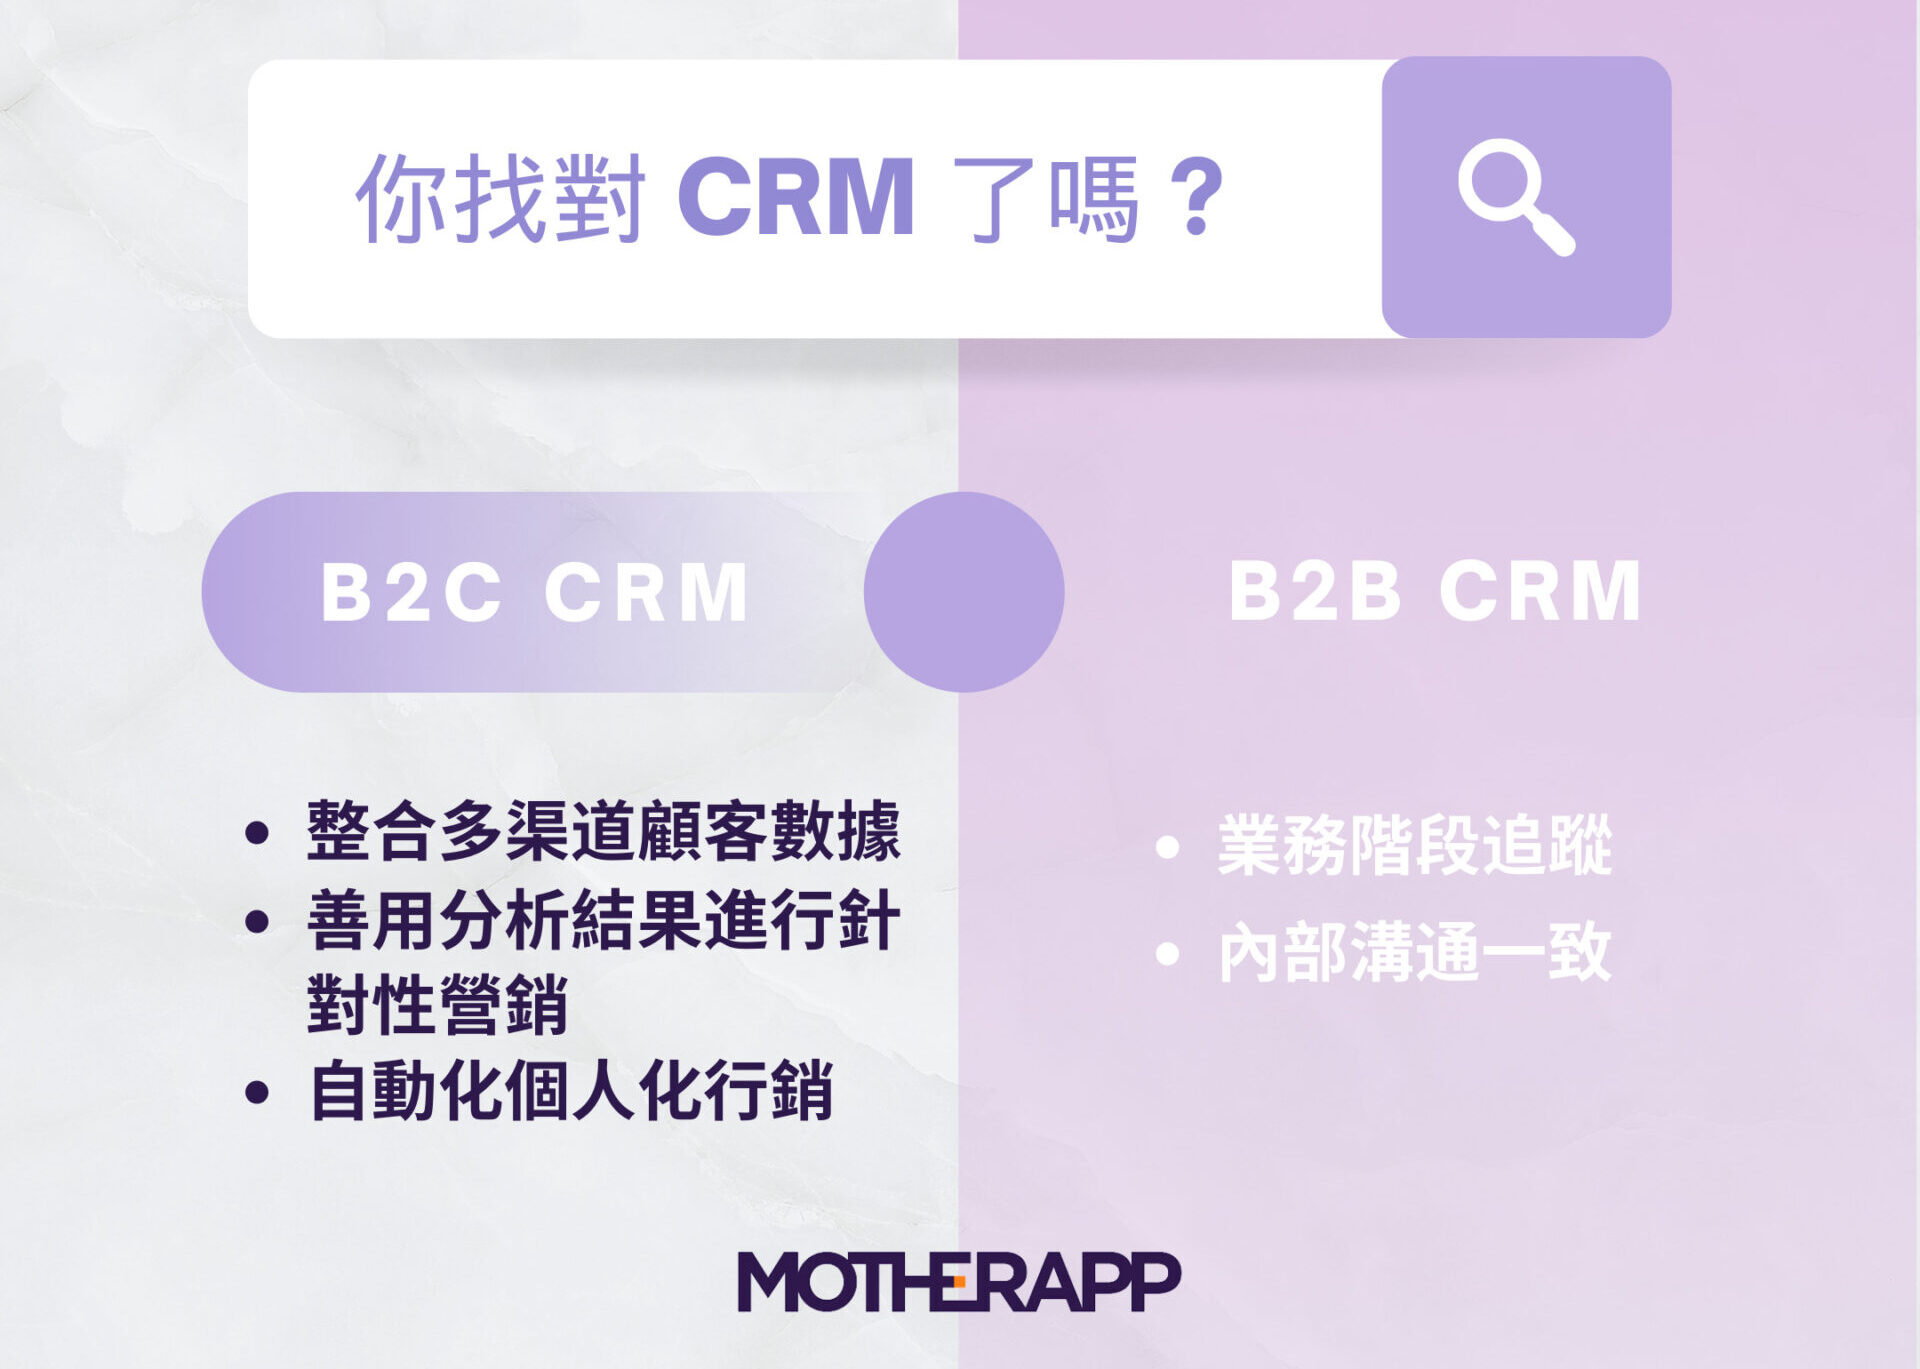 b2b crm vs b2c crm